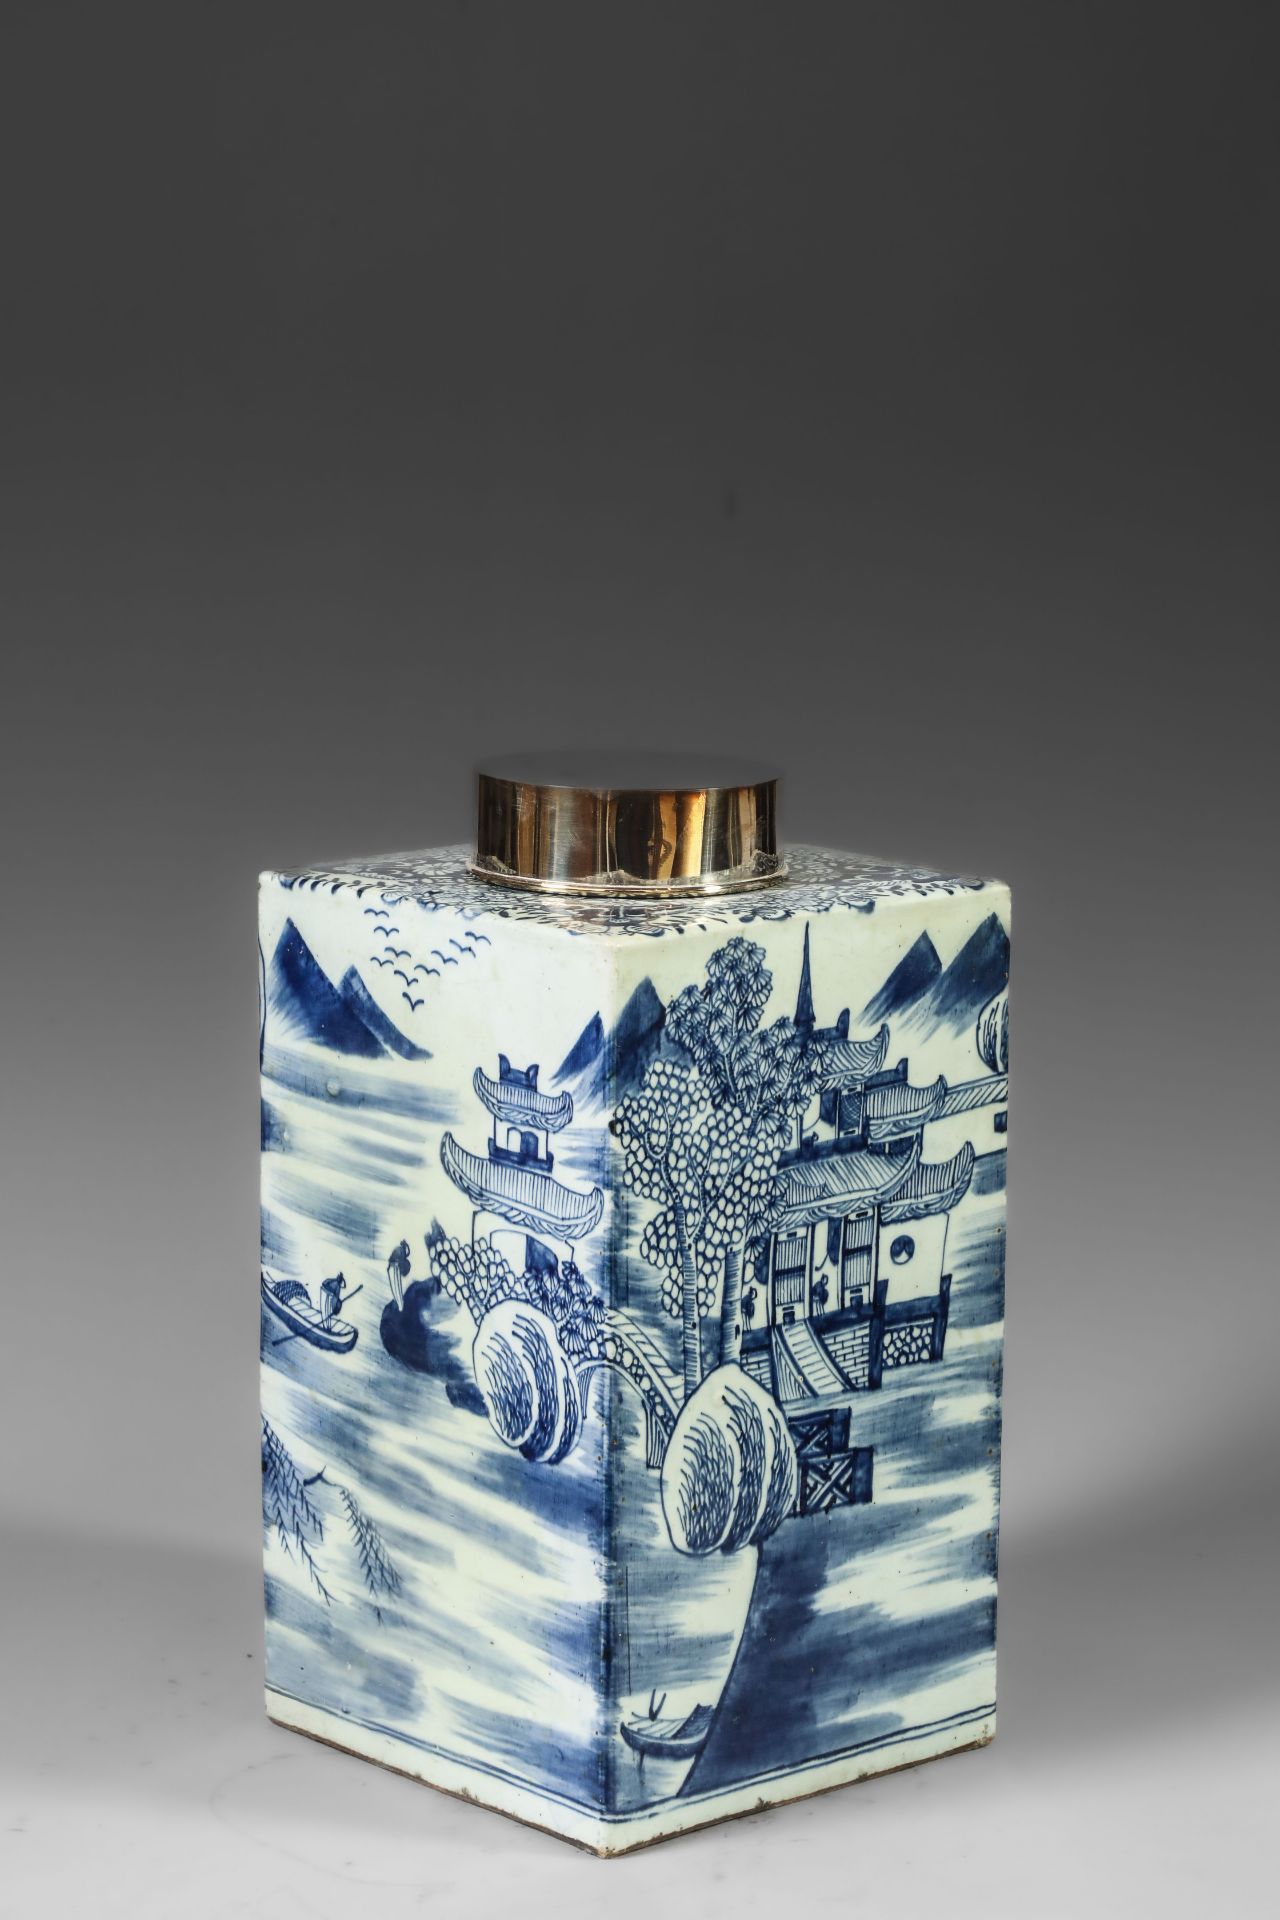 Suite de neuf pots à thé quadrangulaire en porcelaine blanche décoré en bleu sous couverte de - Image 23 of 47